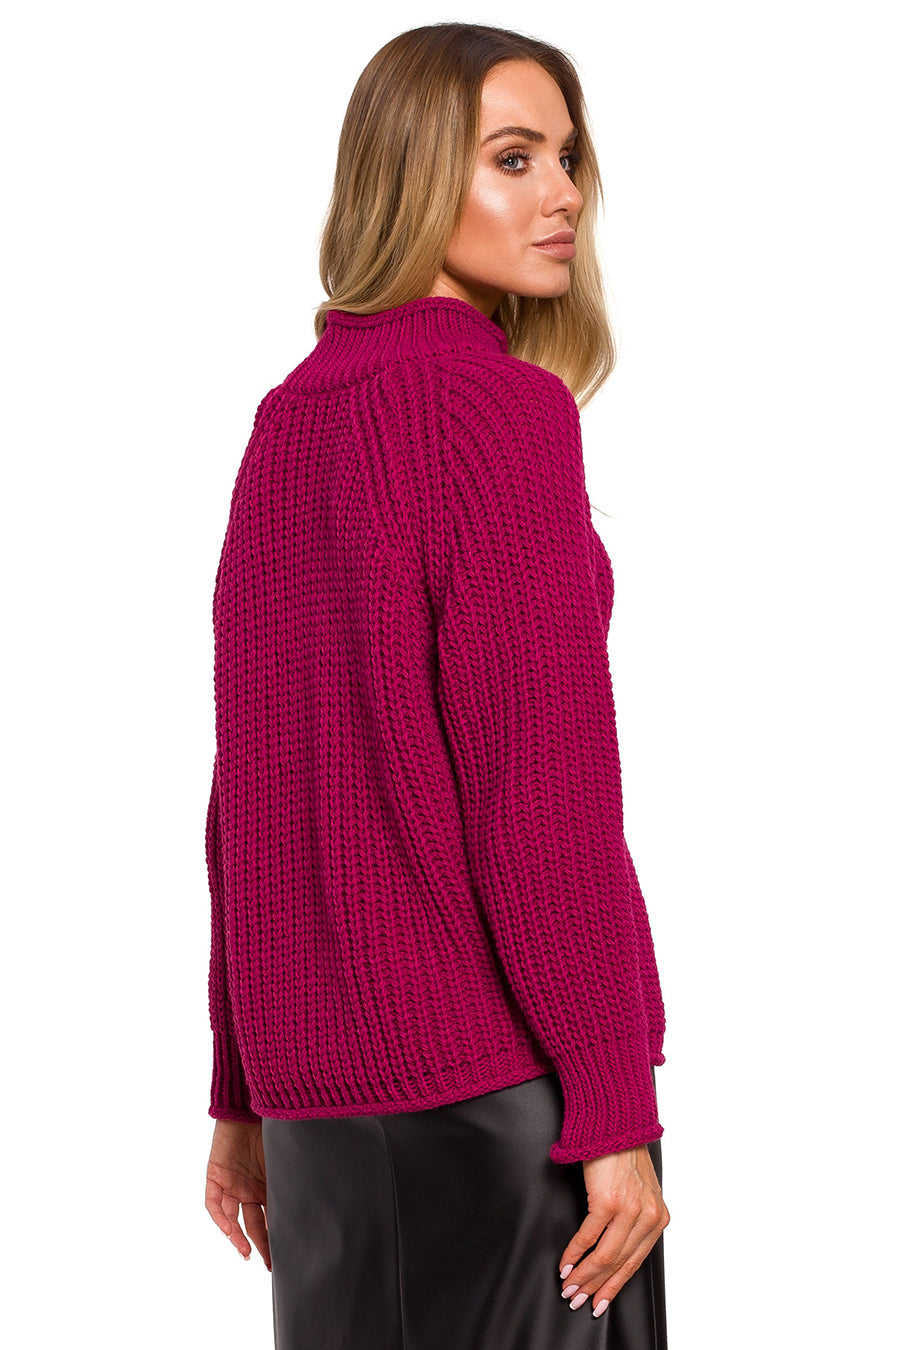 Дамски пуловер Audelia, Розов 4